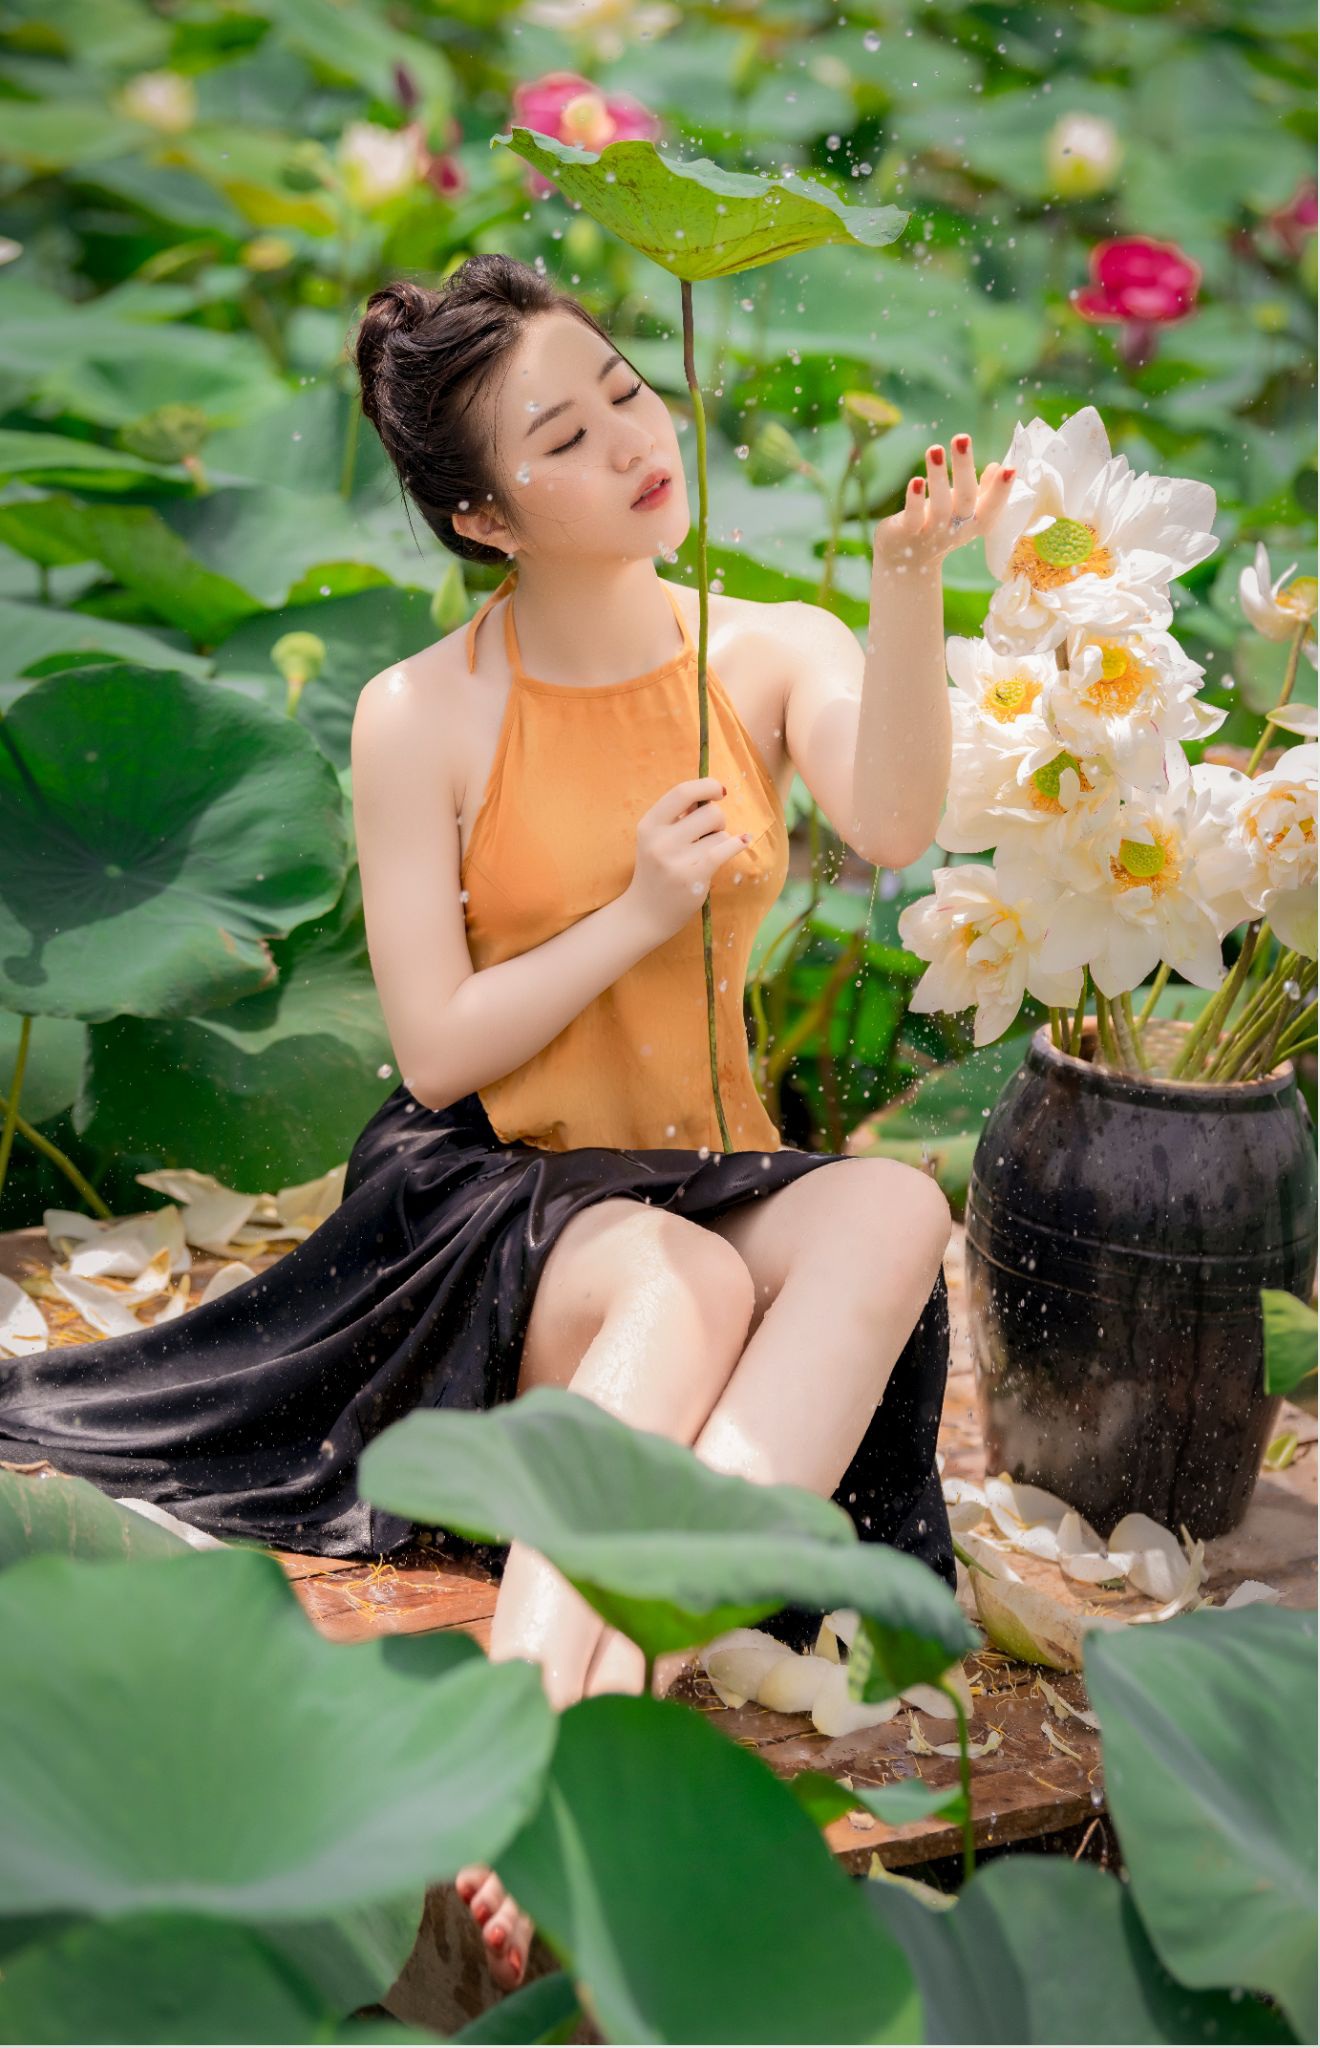 Áo yếm đã từ lâu trở thành symbol của truyền thống Việt Nam. Hãy thử khám phá những dấu ấn văn hóa đó qua bức ảnh chụp áo yếm đầy sáng tạo này. Chắc chắn bạn sẽ cảm thấy ngạc nhiên với sự kết hợp độc đáo và thông minh này.